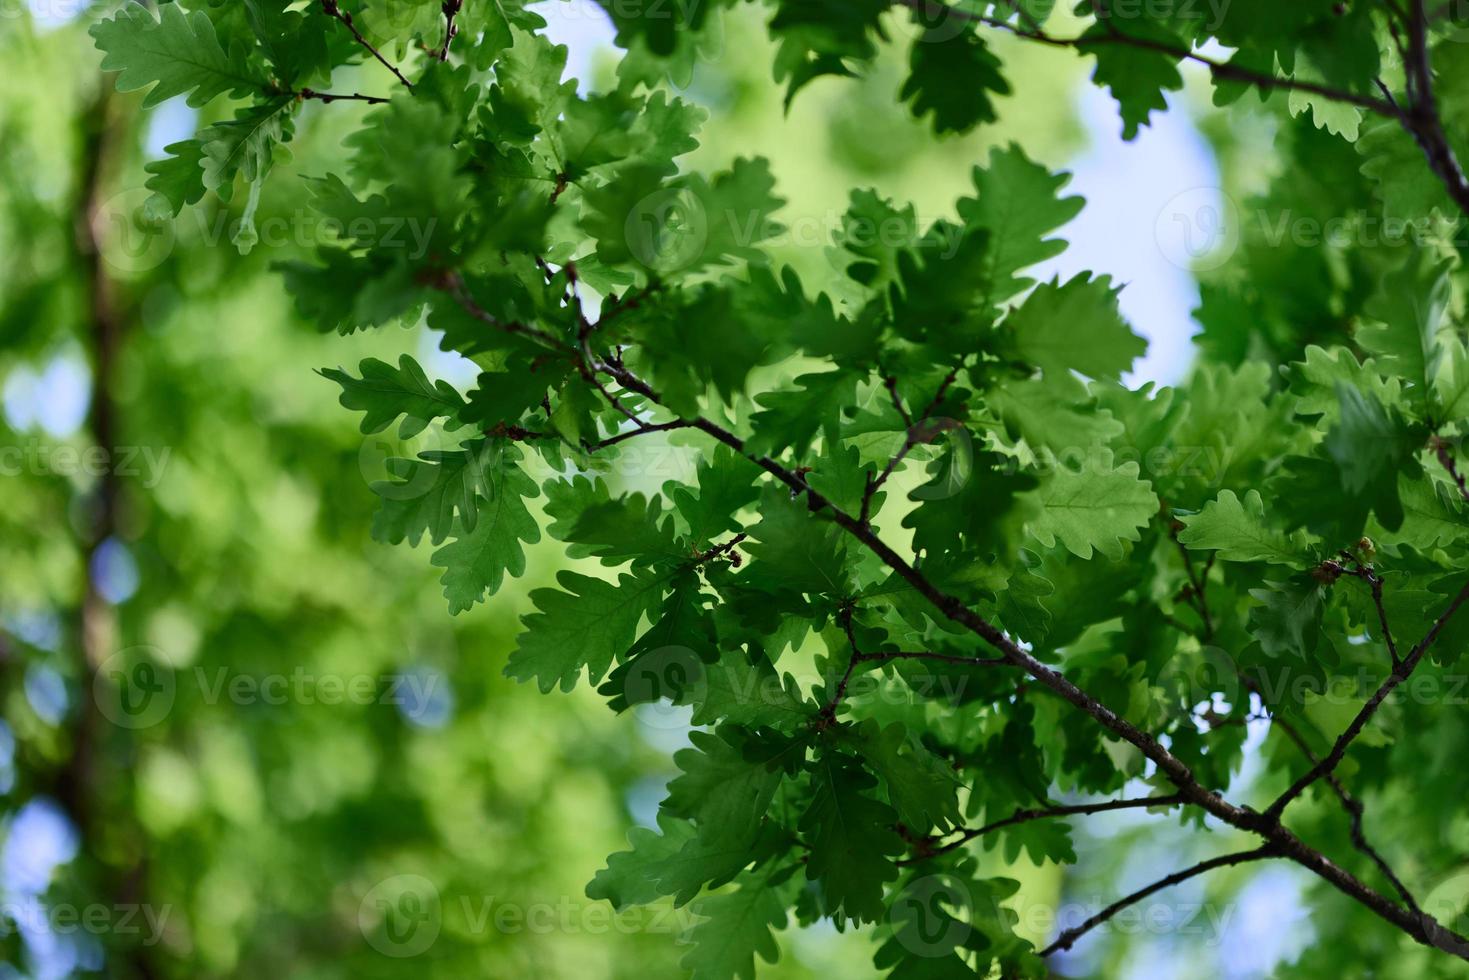 carvalho folhas fechar-se, verde Primavera árvore coroa luz solar foto